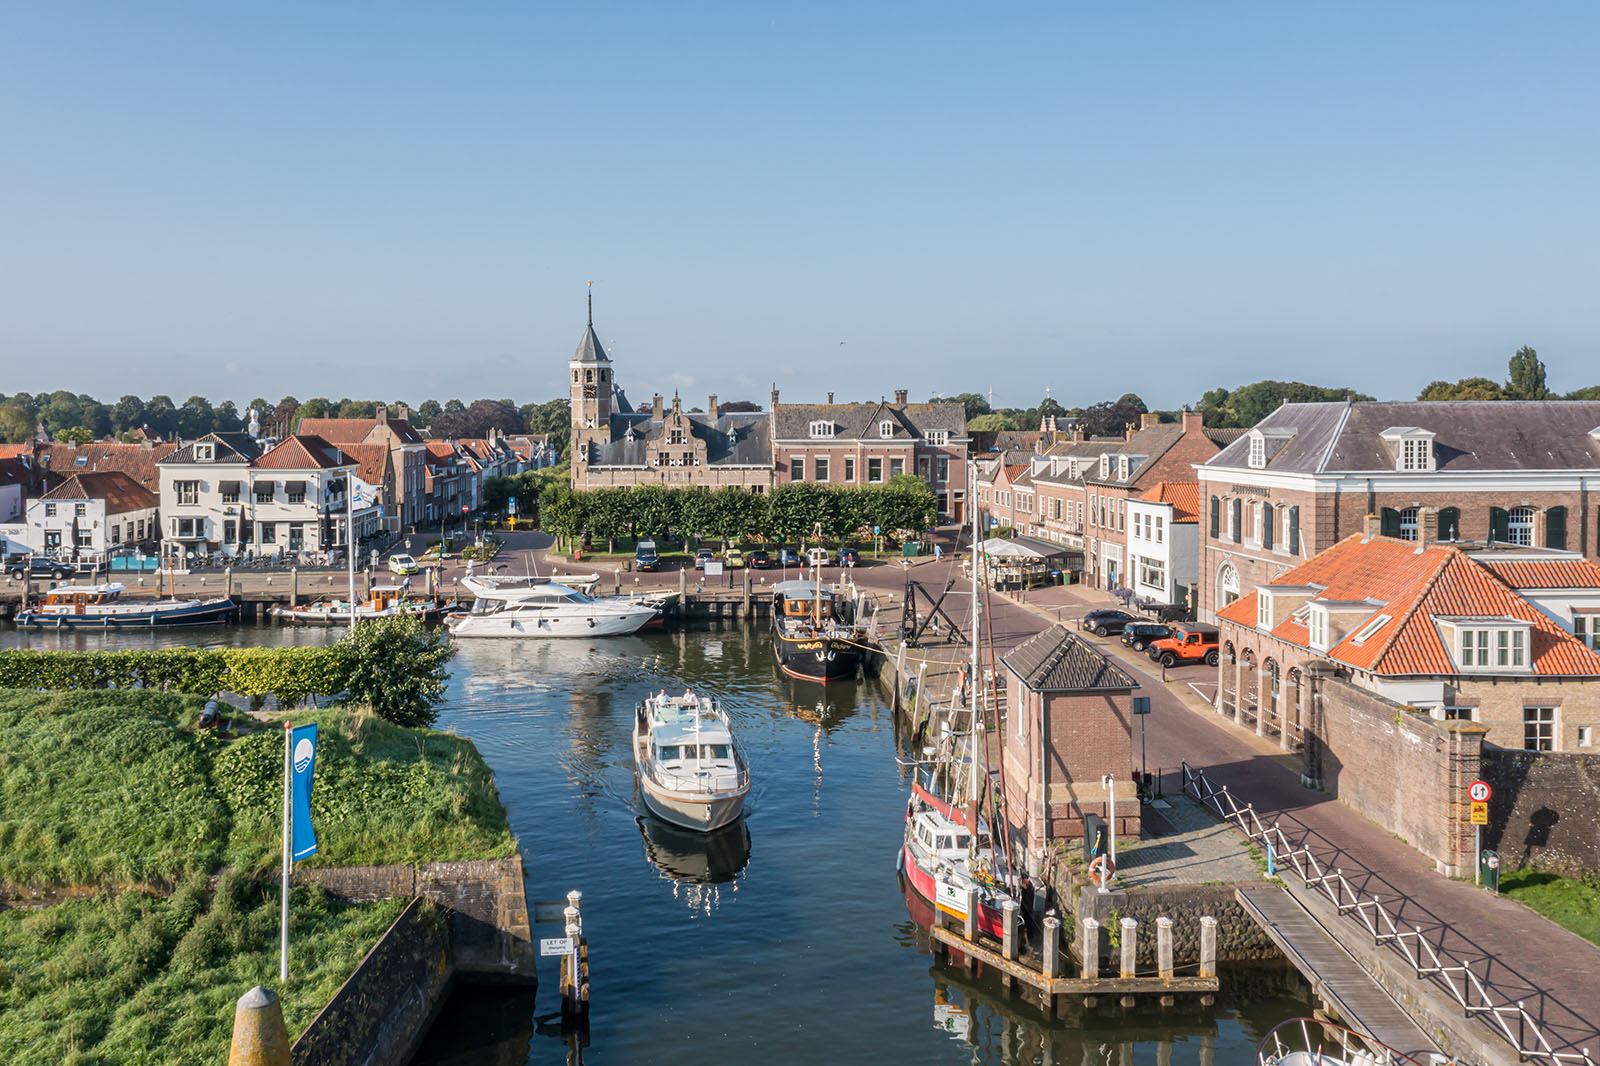 Mieten Sie eine Motoryacht in Zeeland ohne Bootsführerschein